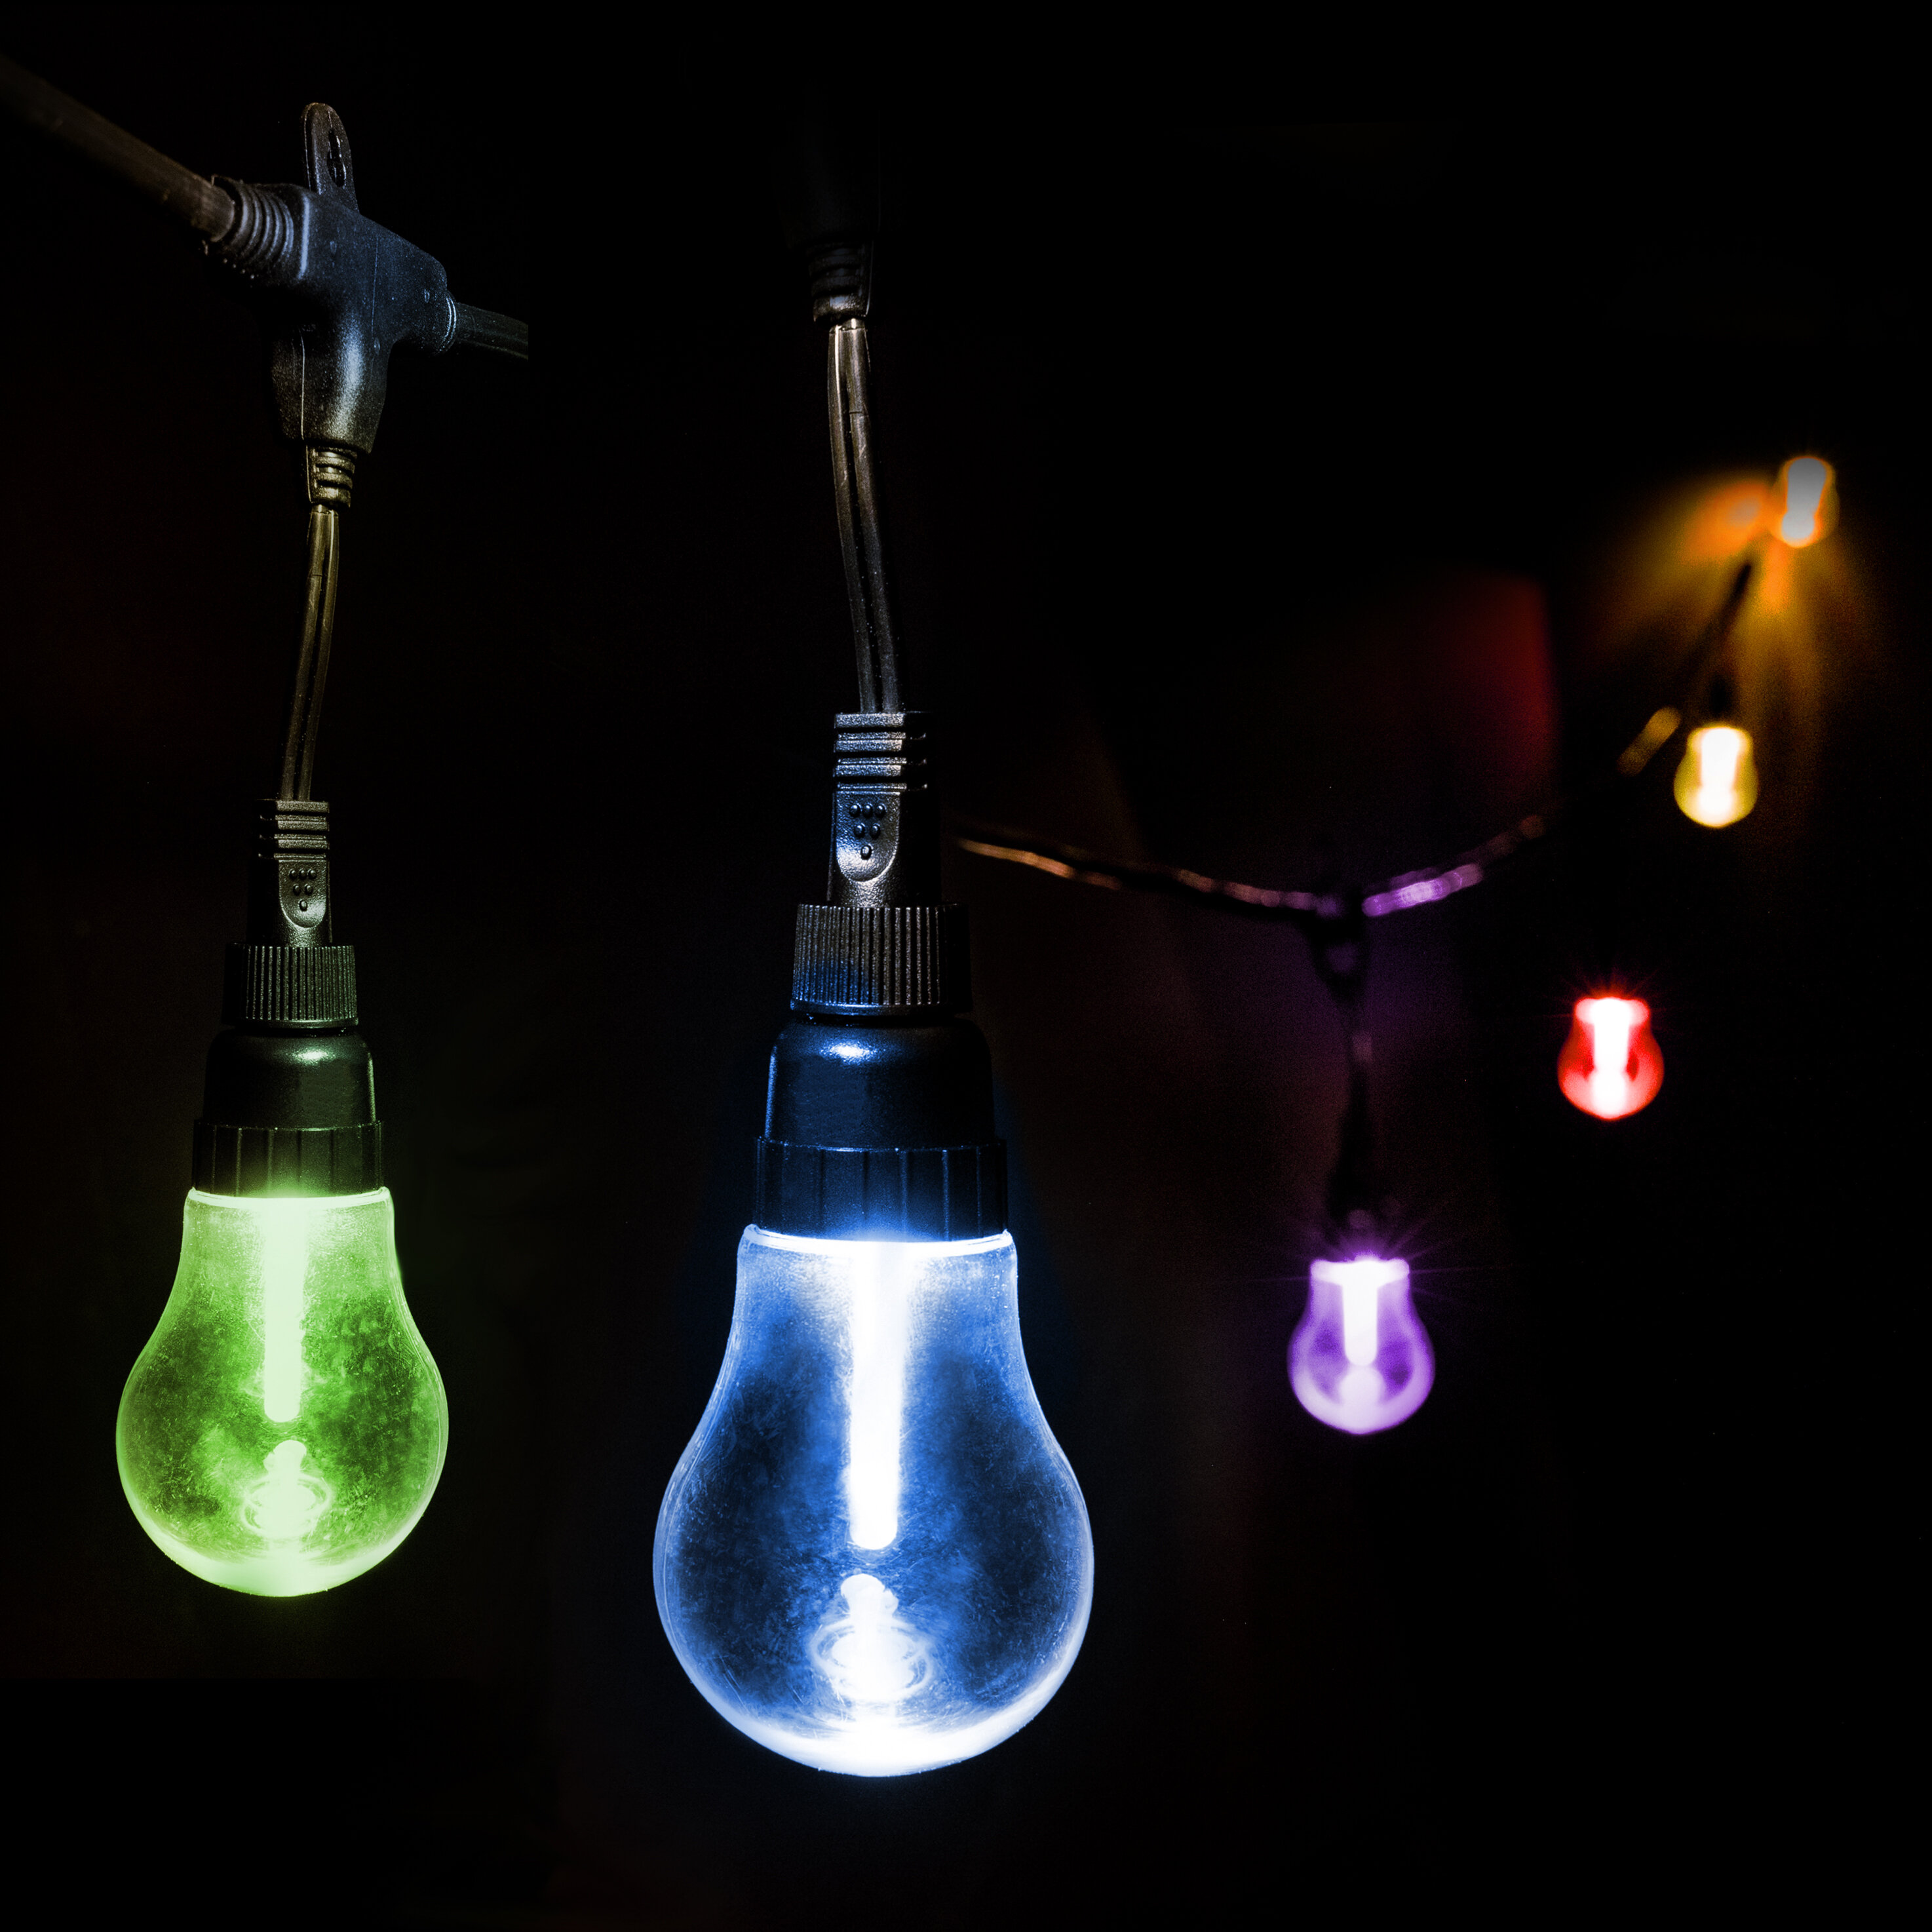 https://assets.wfcdn.com/im/16149704/compr-r85/1629/162966433/color-changing-outdoor-12-bulb-24-plug-in-led-string-light.jpg